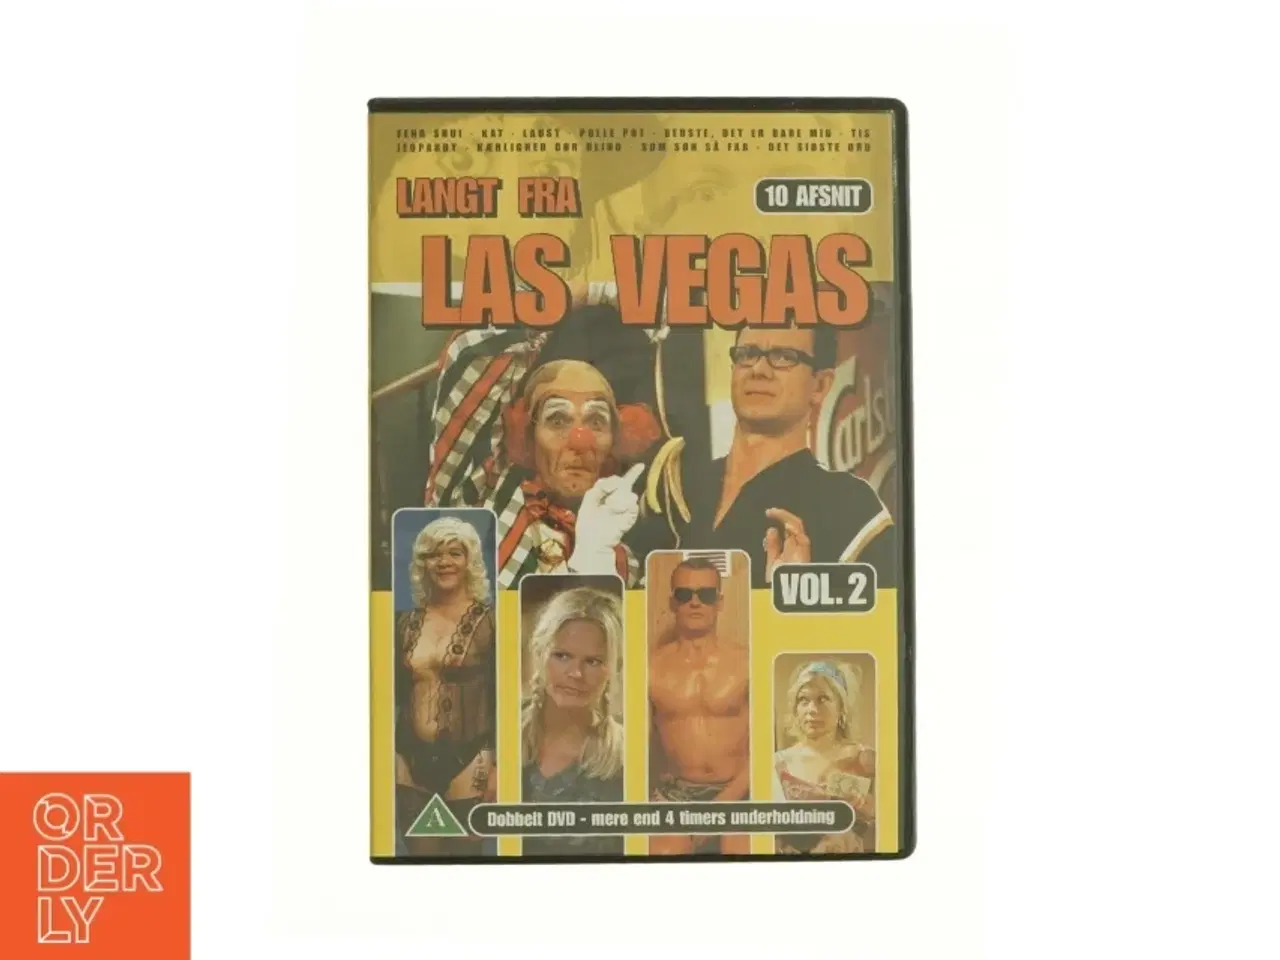 Billede 1 - Langt fra Las Vegas Vol. 2 fra DVD